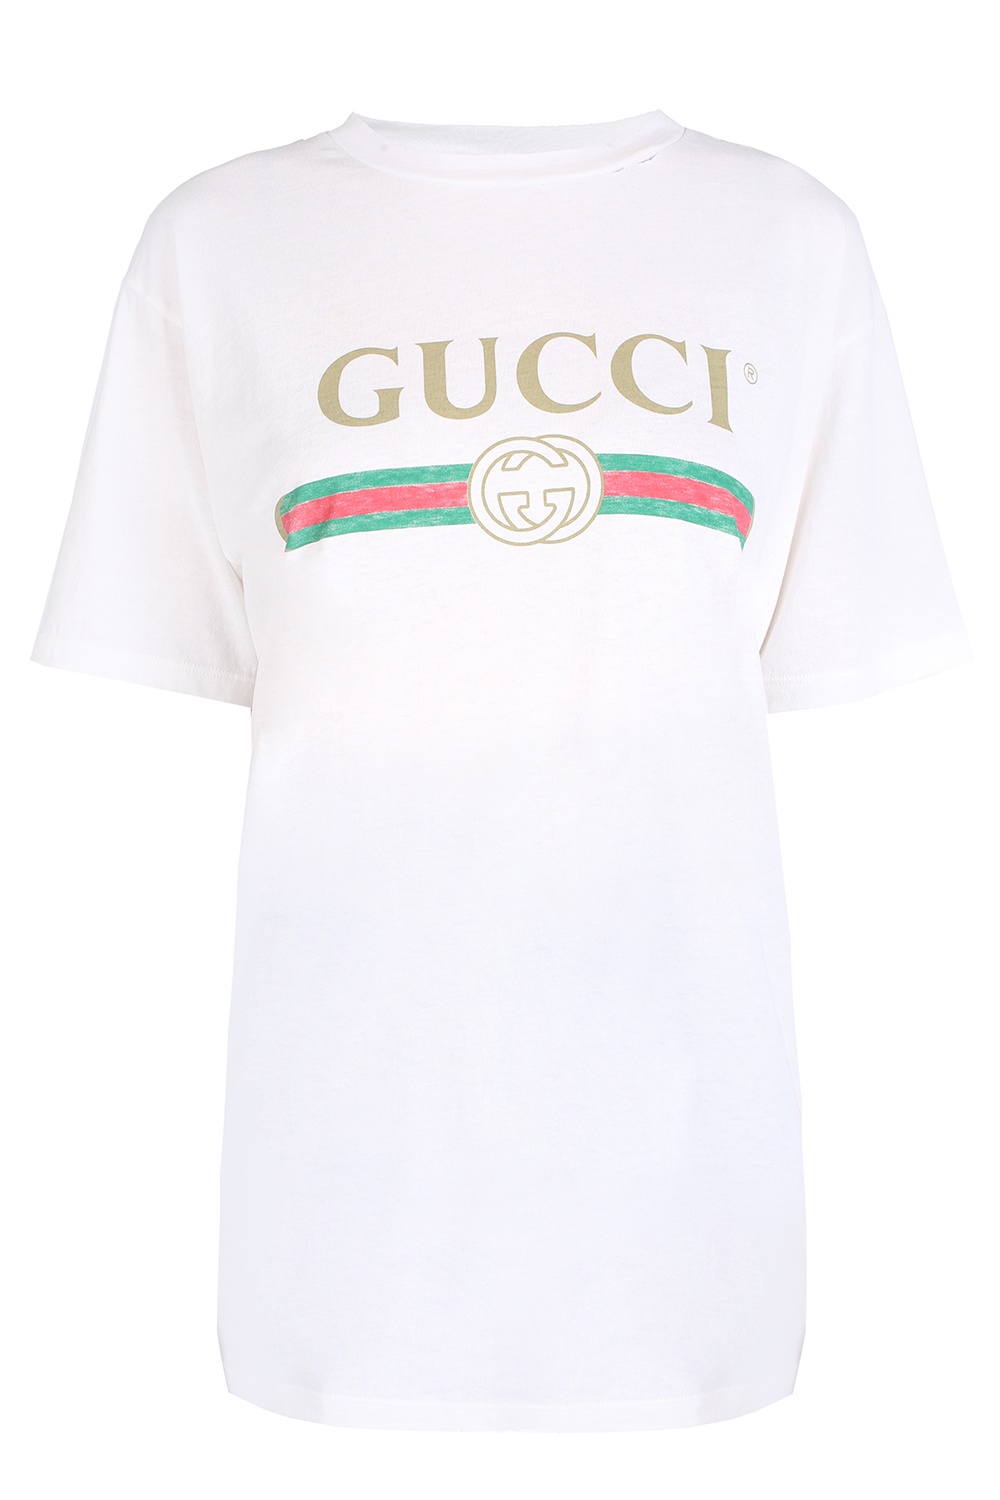 Gucci Printed T-shirt | Women's Clothing | Vitkac